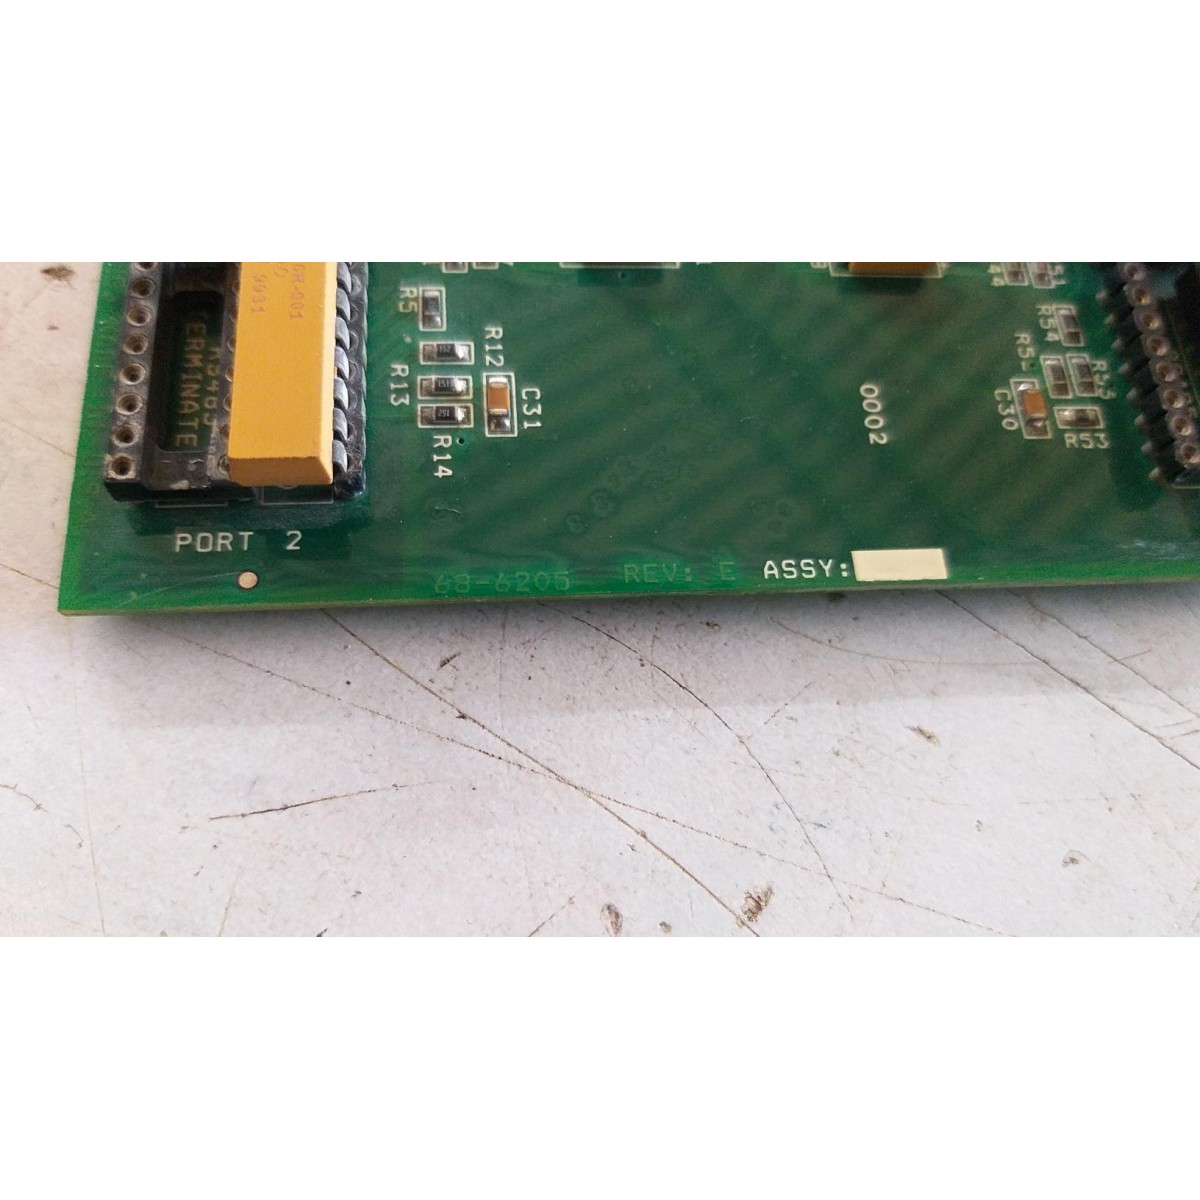 Details about   Omniflow Computers Inc circuit board 68-6208 E/D module 